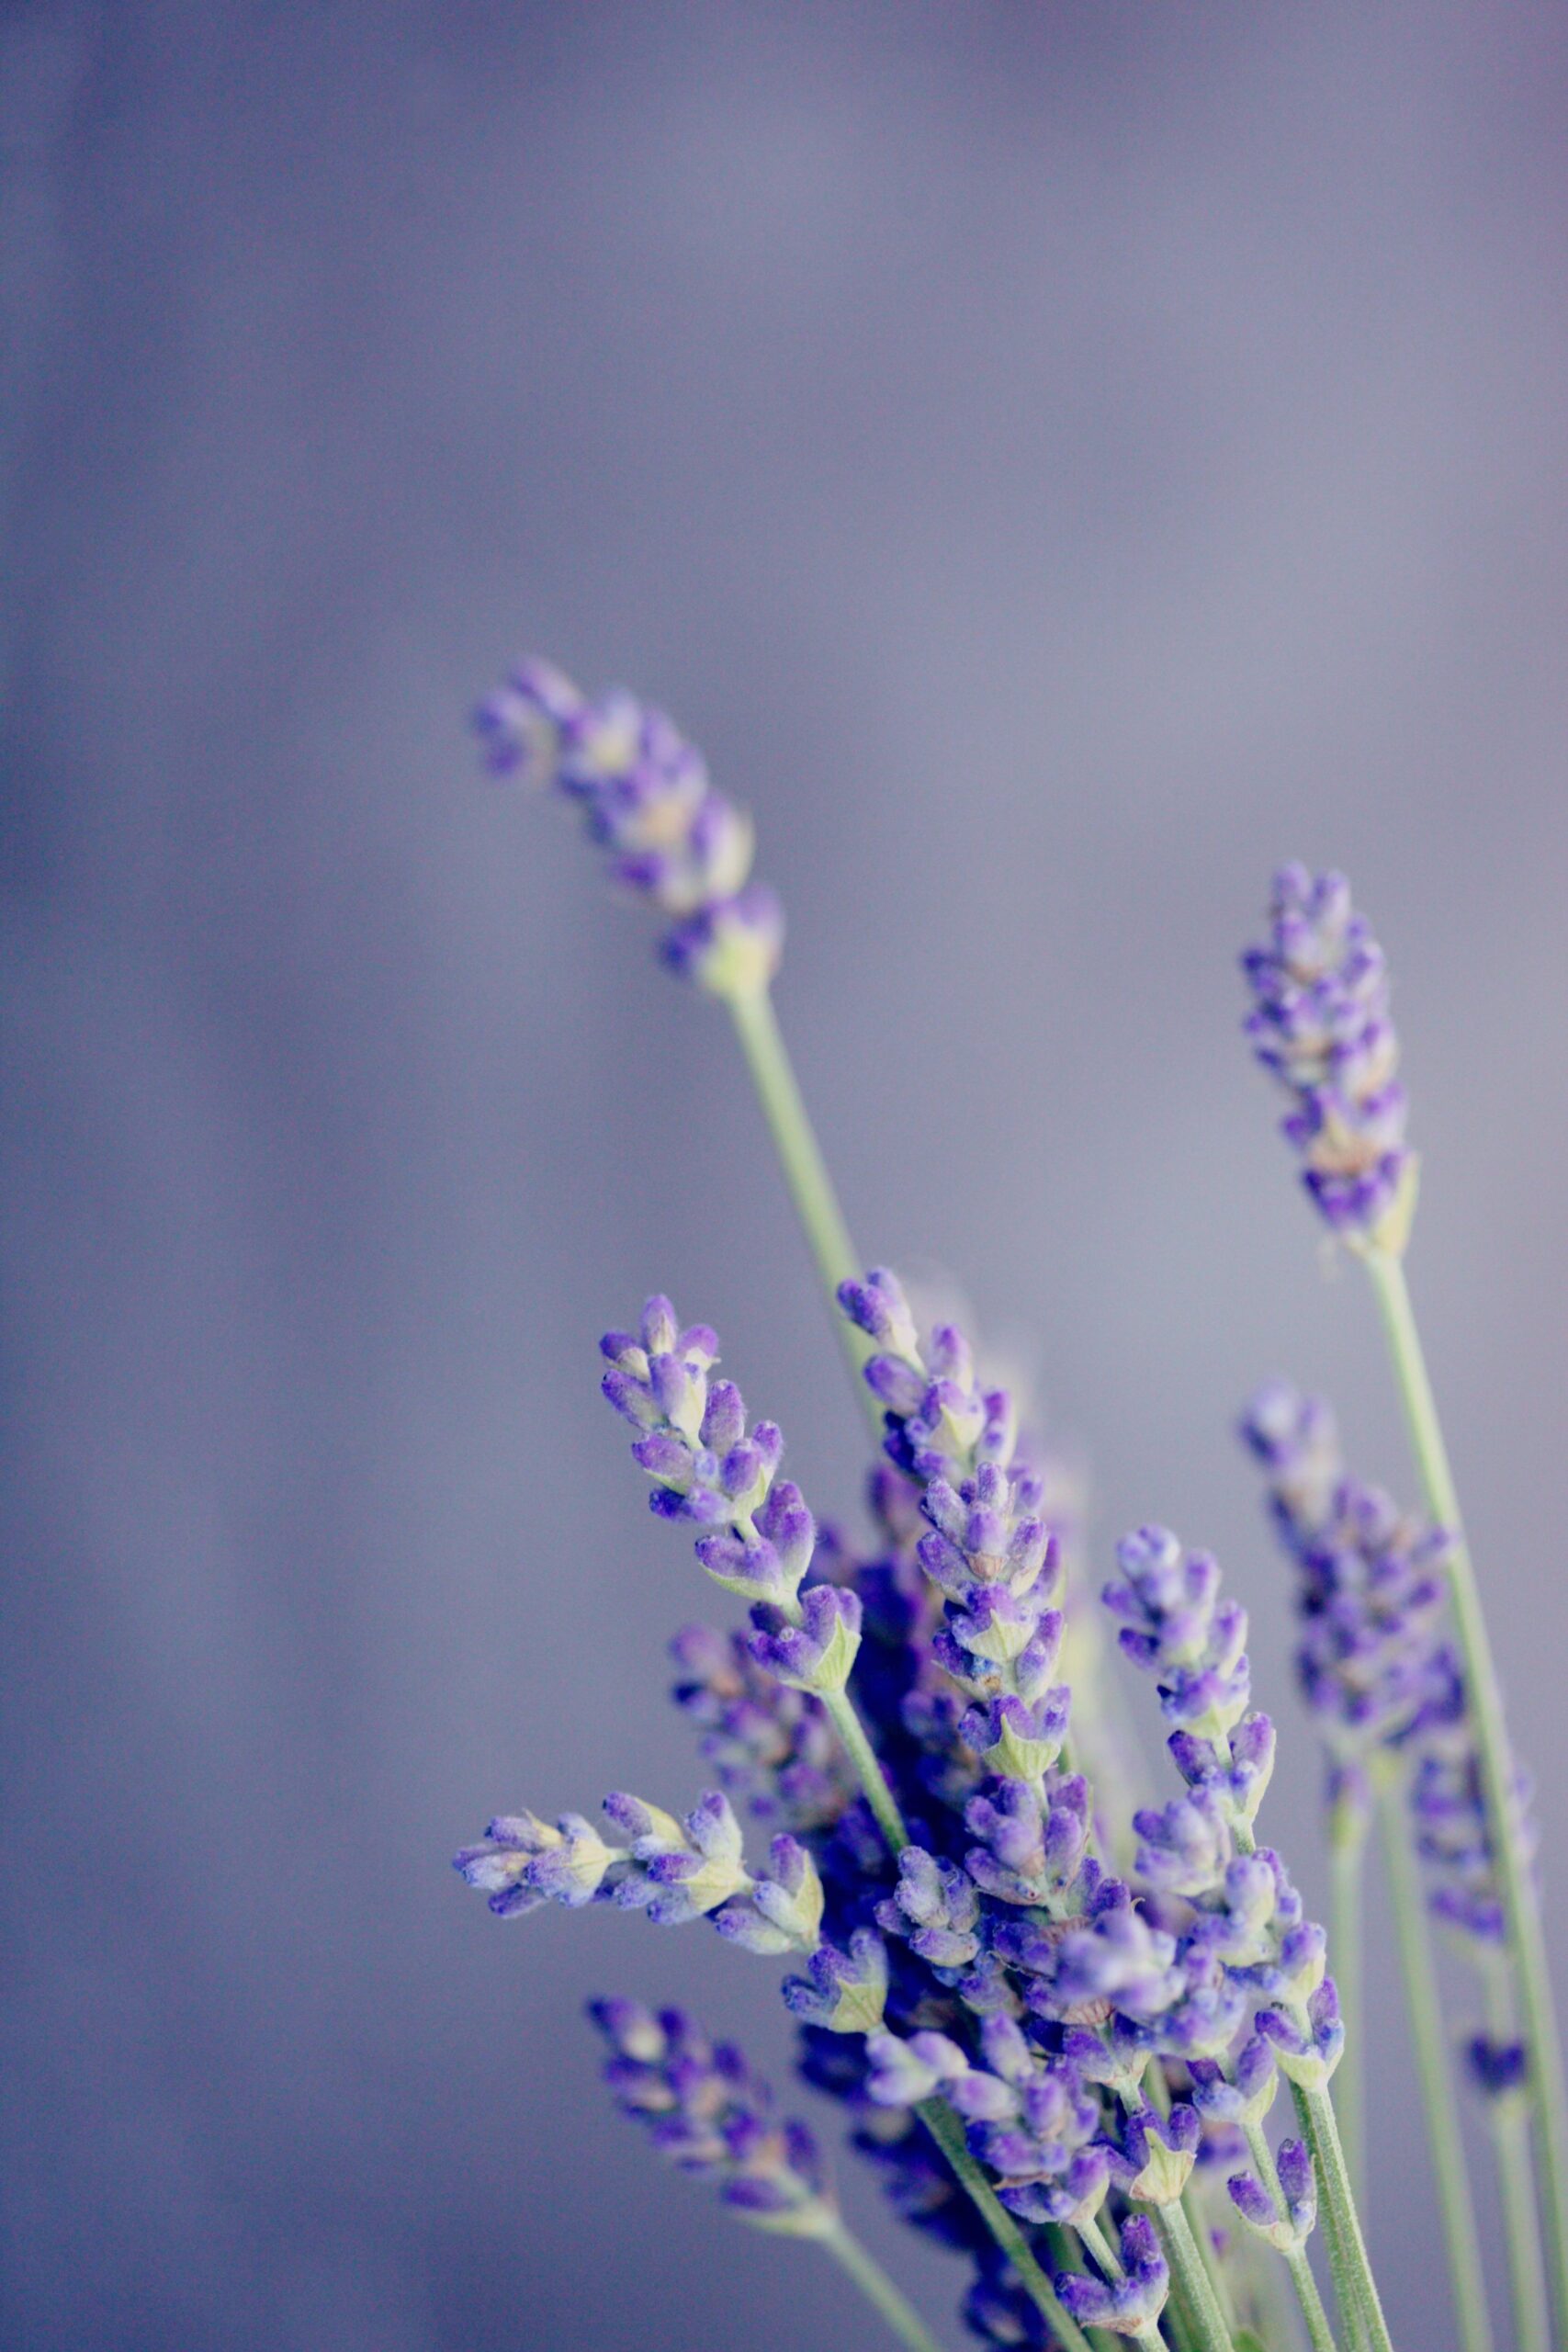 Hoa Lavender là loài hoa thơm ngát, có màu tím thanh lịch tuyệt đẹp. Hãy ngắm nhìn hình ảnh về loài hoa đặc biệt này và cảm nhận sự thanh tịnh, dịu dàng của nó nhé.